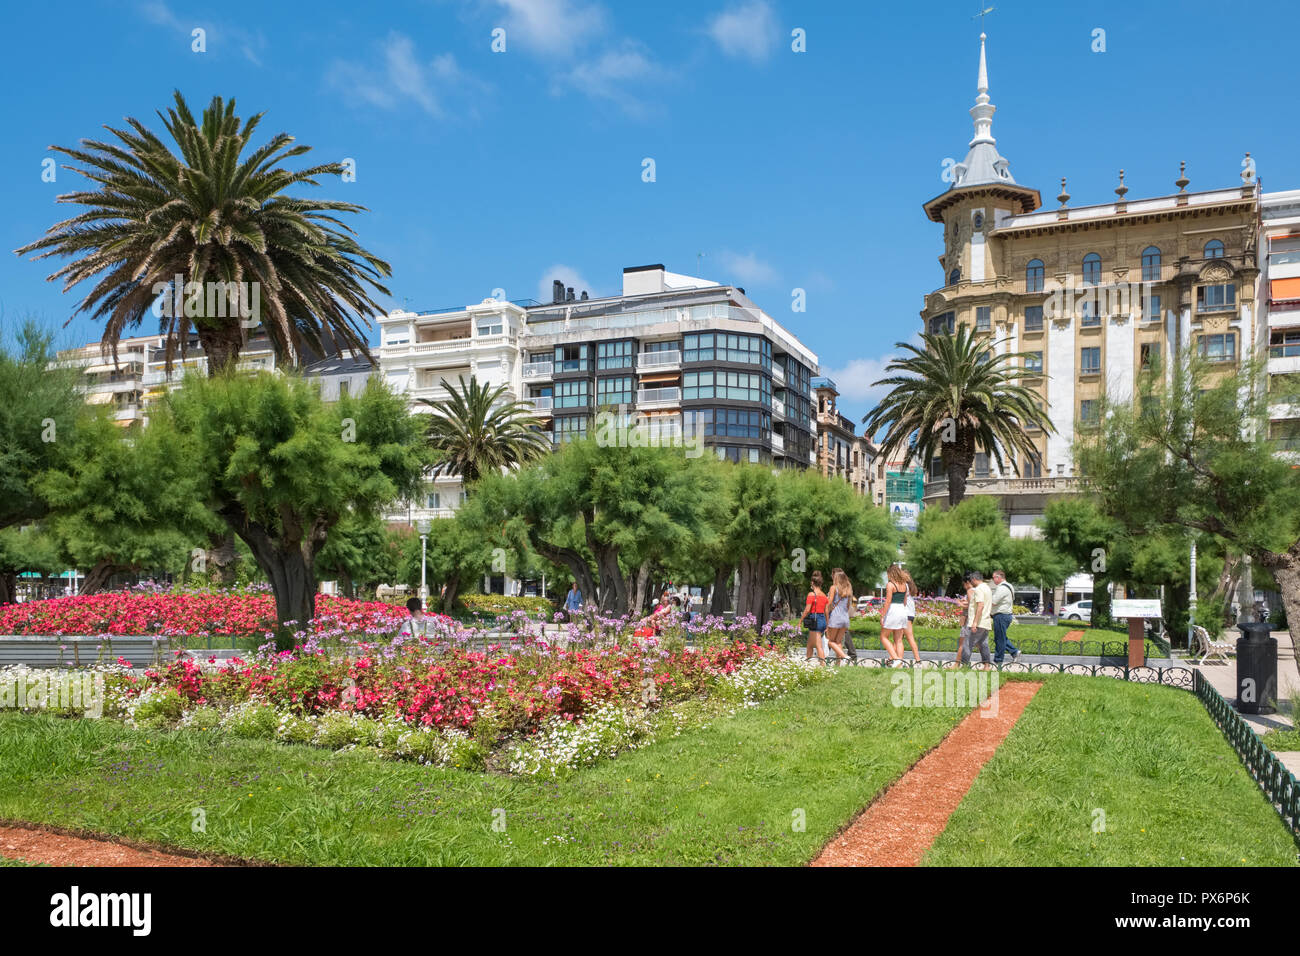 Parc urbain ou les jardins publics dans le centre de San Sebastian, Donostia, Pays Basque, Espagne, Europe Banque D'Images